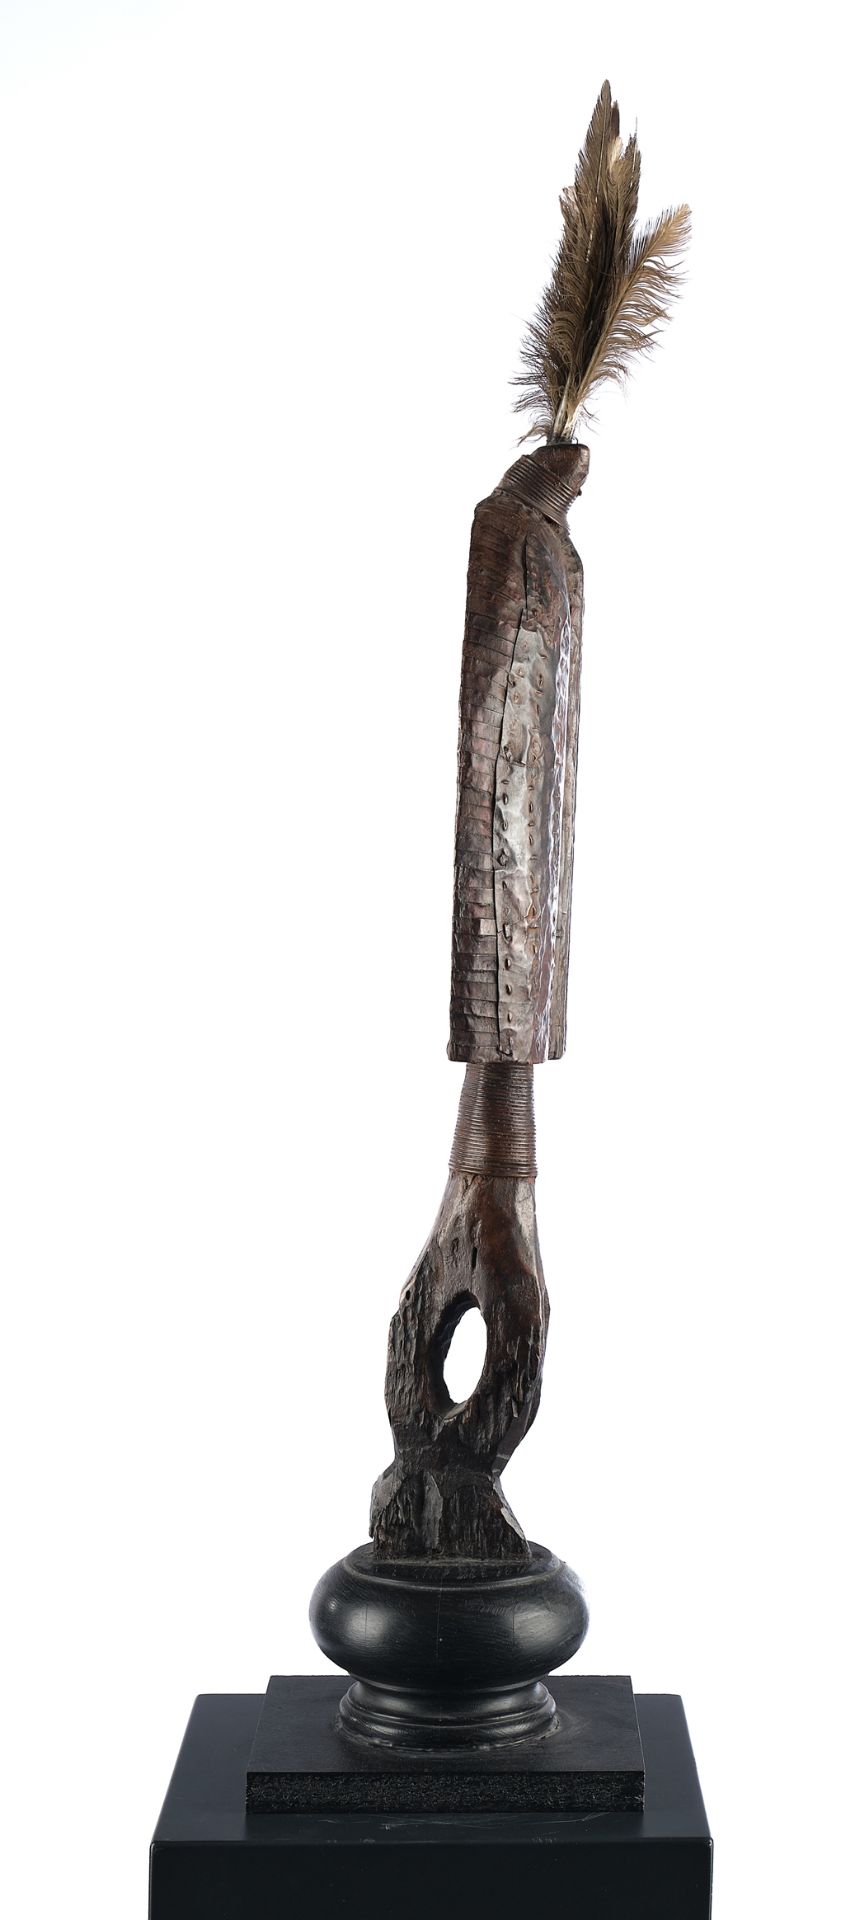 Reliquienfigur, Mahongwe, Gabun, Afrika, Grabwächter aus Holz, mit Metallstreifen und Blech belegt, - Bild 4 aus 4